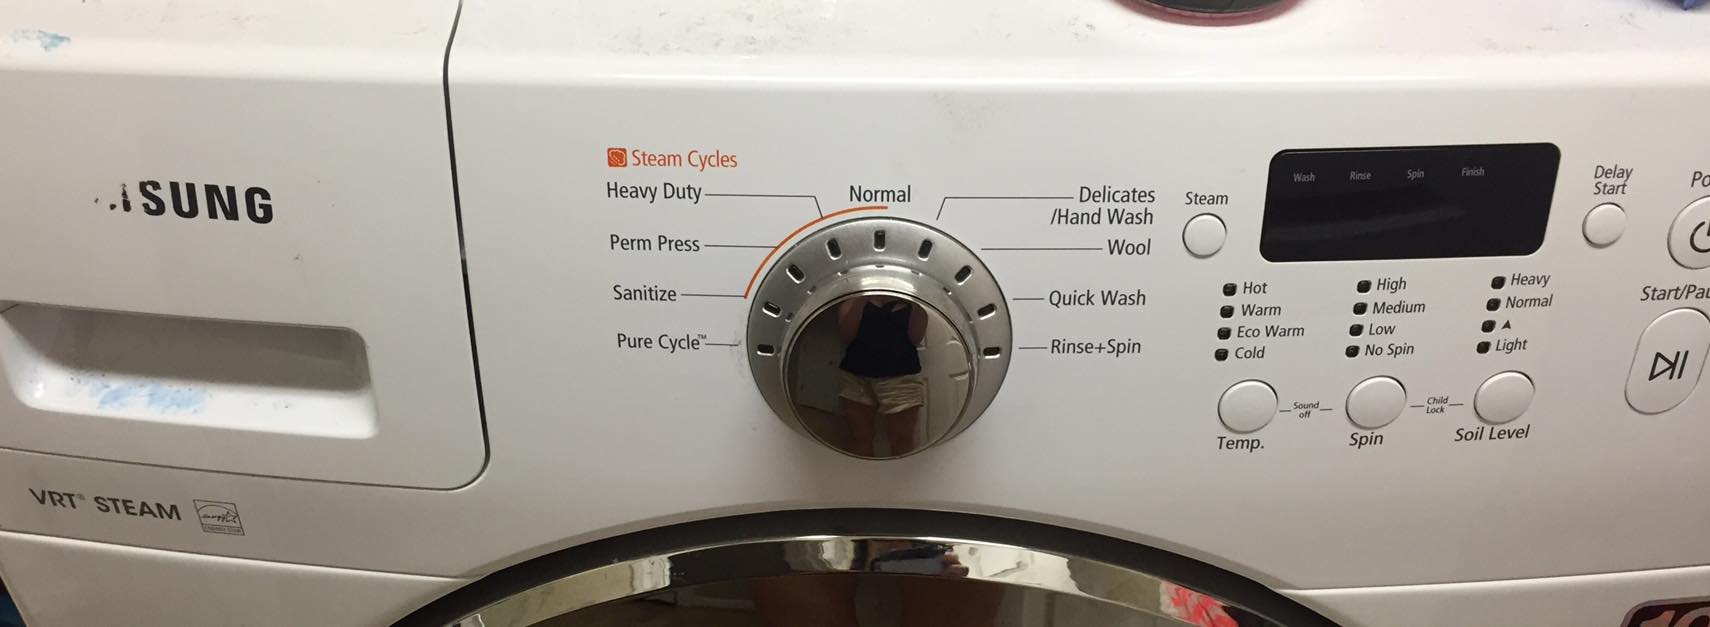 функция steam в стиральной машине что это такое фото 58